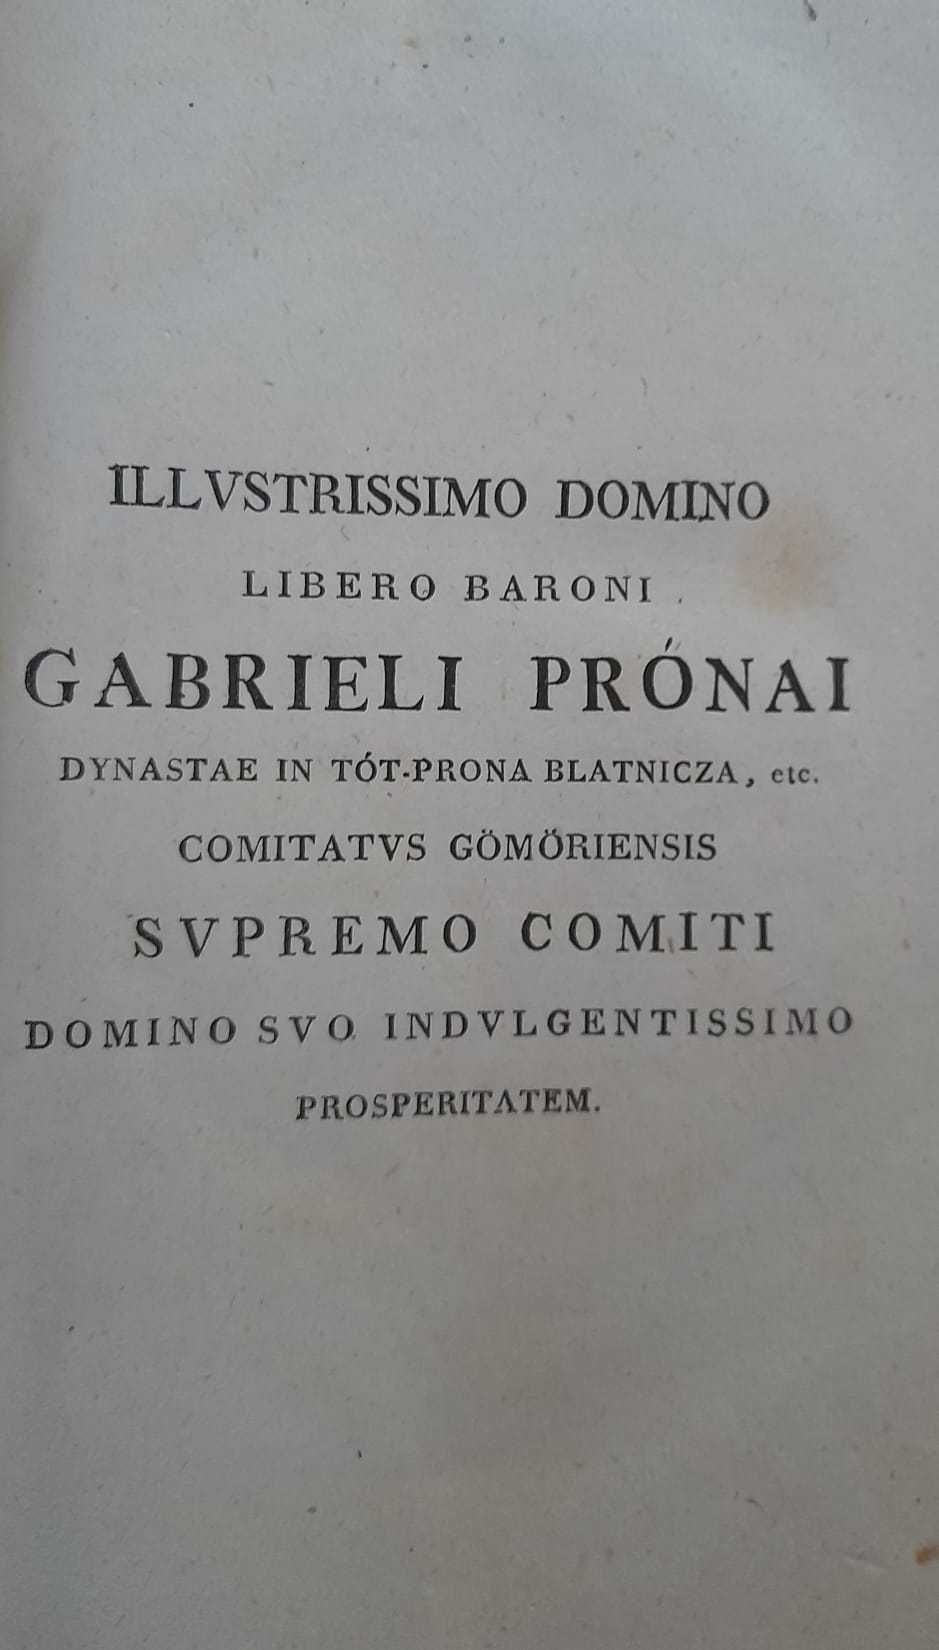 Conspectus reipublicae litterariae in Hungaria, Pavlio Wallaszky,1808